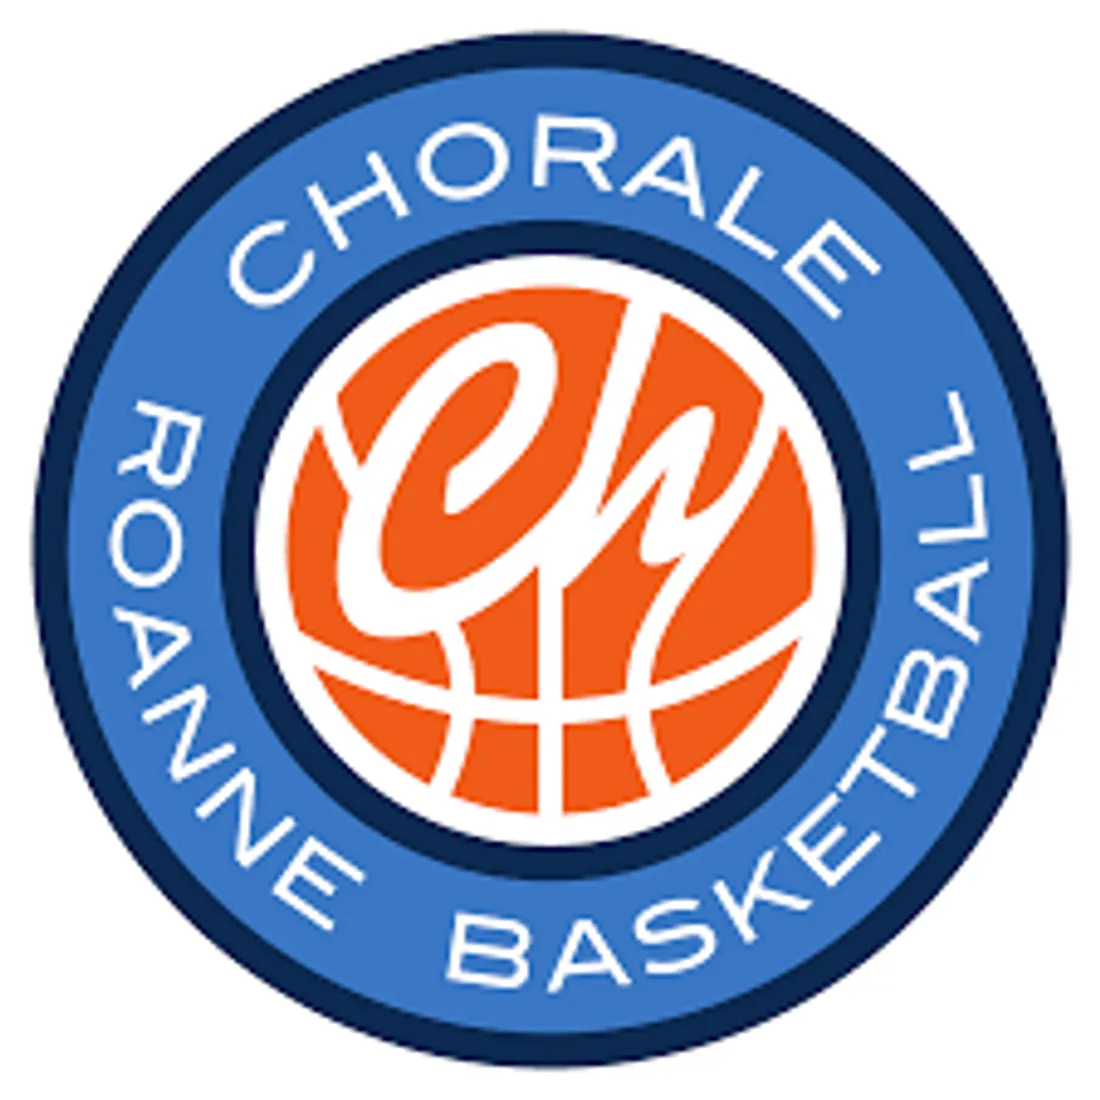 Chorale de Roanne / Chalon-sur Saône